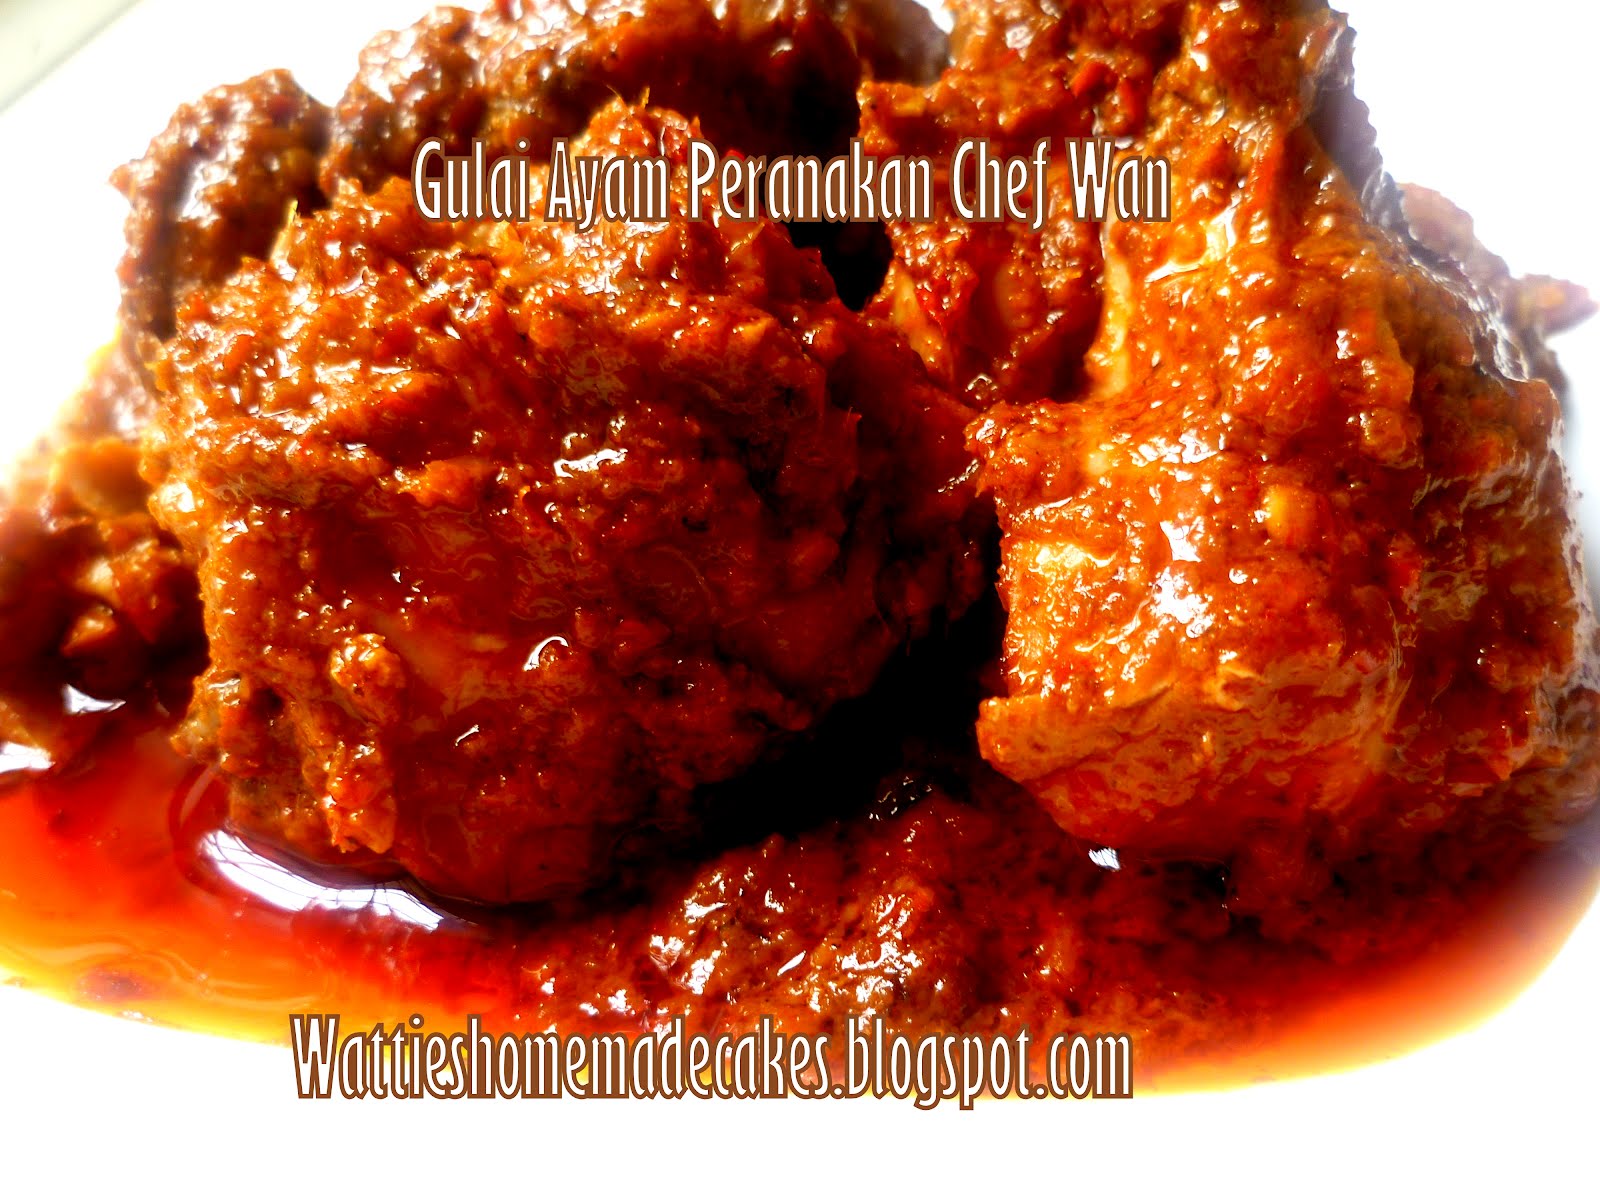 Wattie's HomeMade: Gulai Ayam Peranakan Chef Wan